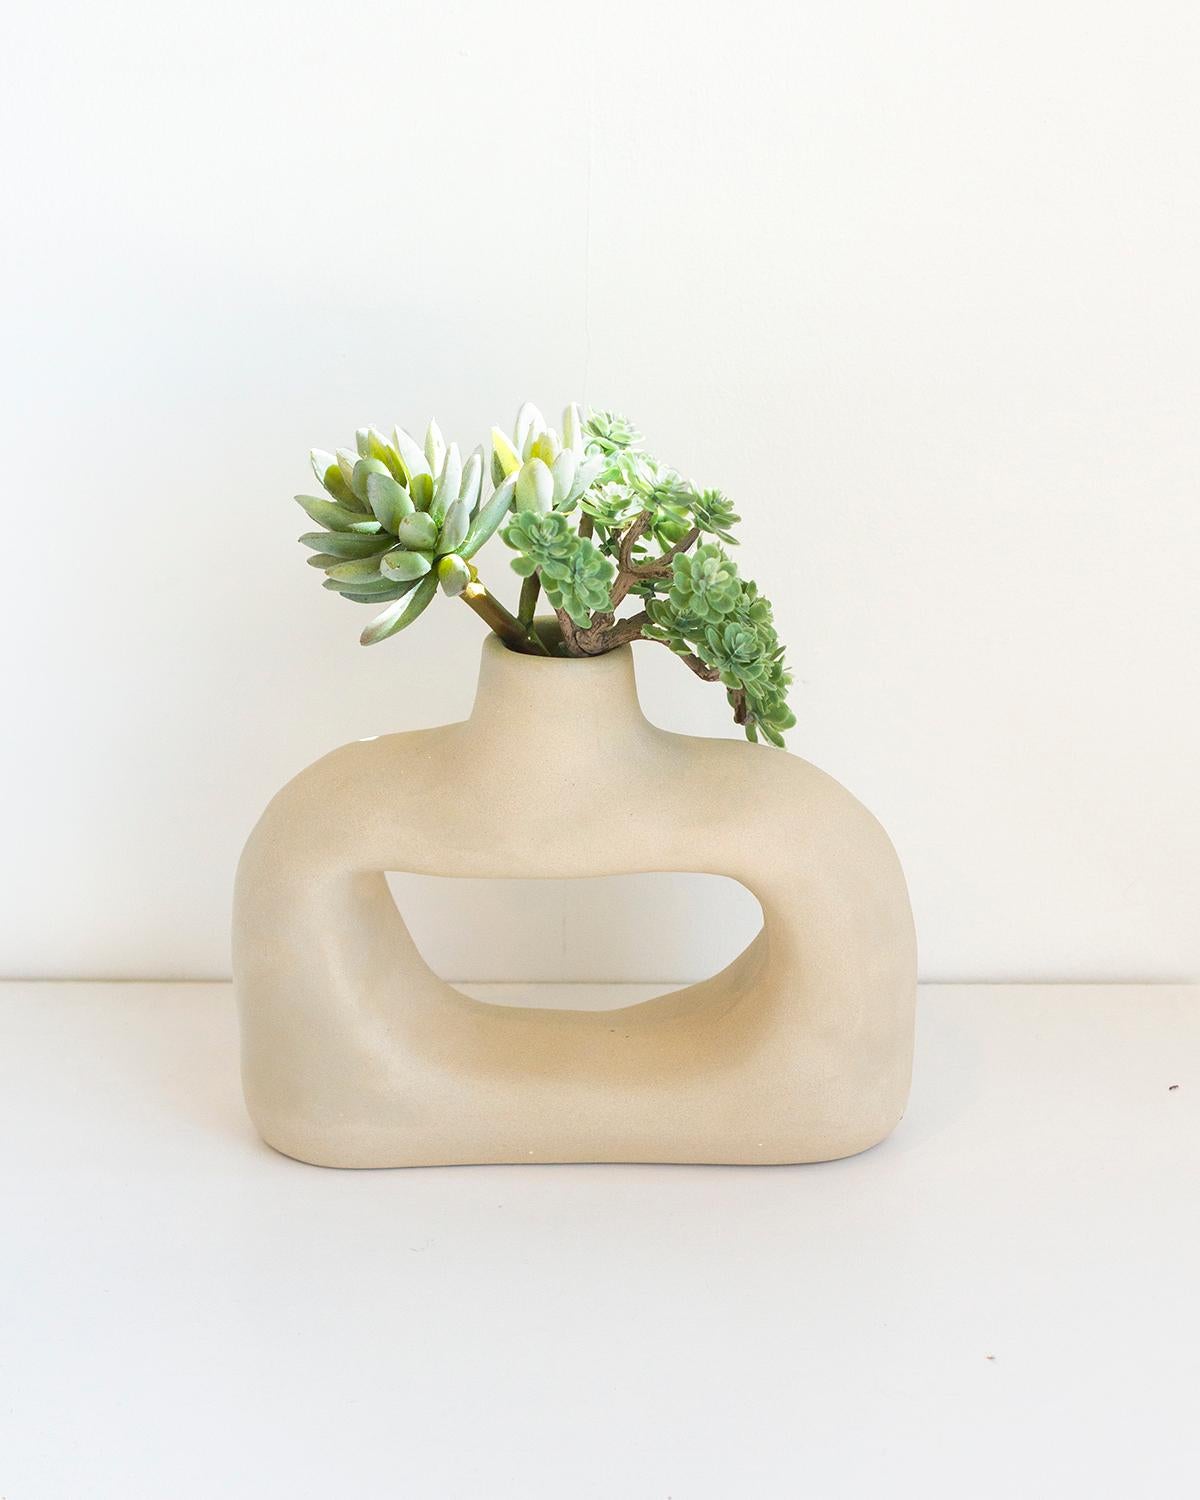 Die Nook Clay Vase ist ein zeitloses Stück, das aus natürlichem weißen Ton gefertigt ist. Handgefertigt aus natürlichen MATERIALEN mit einer rustikalen und skulpturalen Form, bietet sie einen organischen, modernen Look, der eine minimalistische und